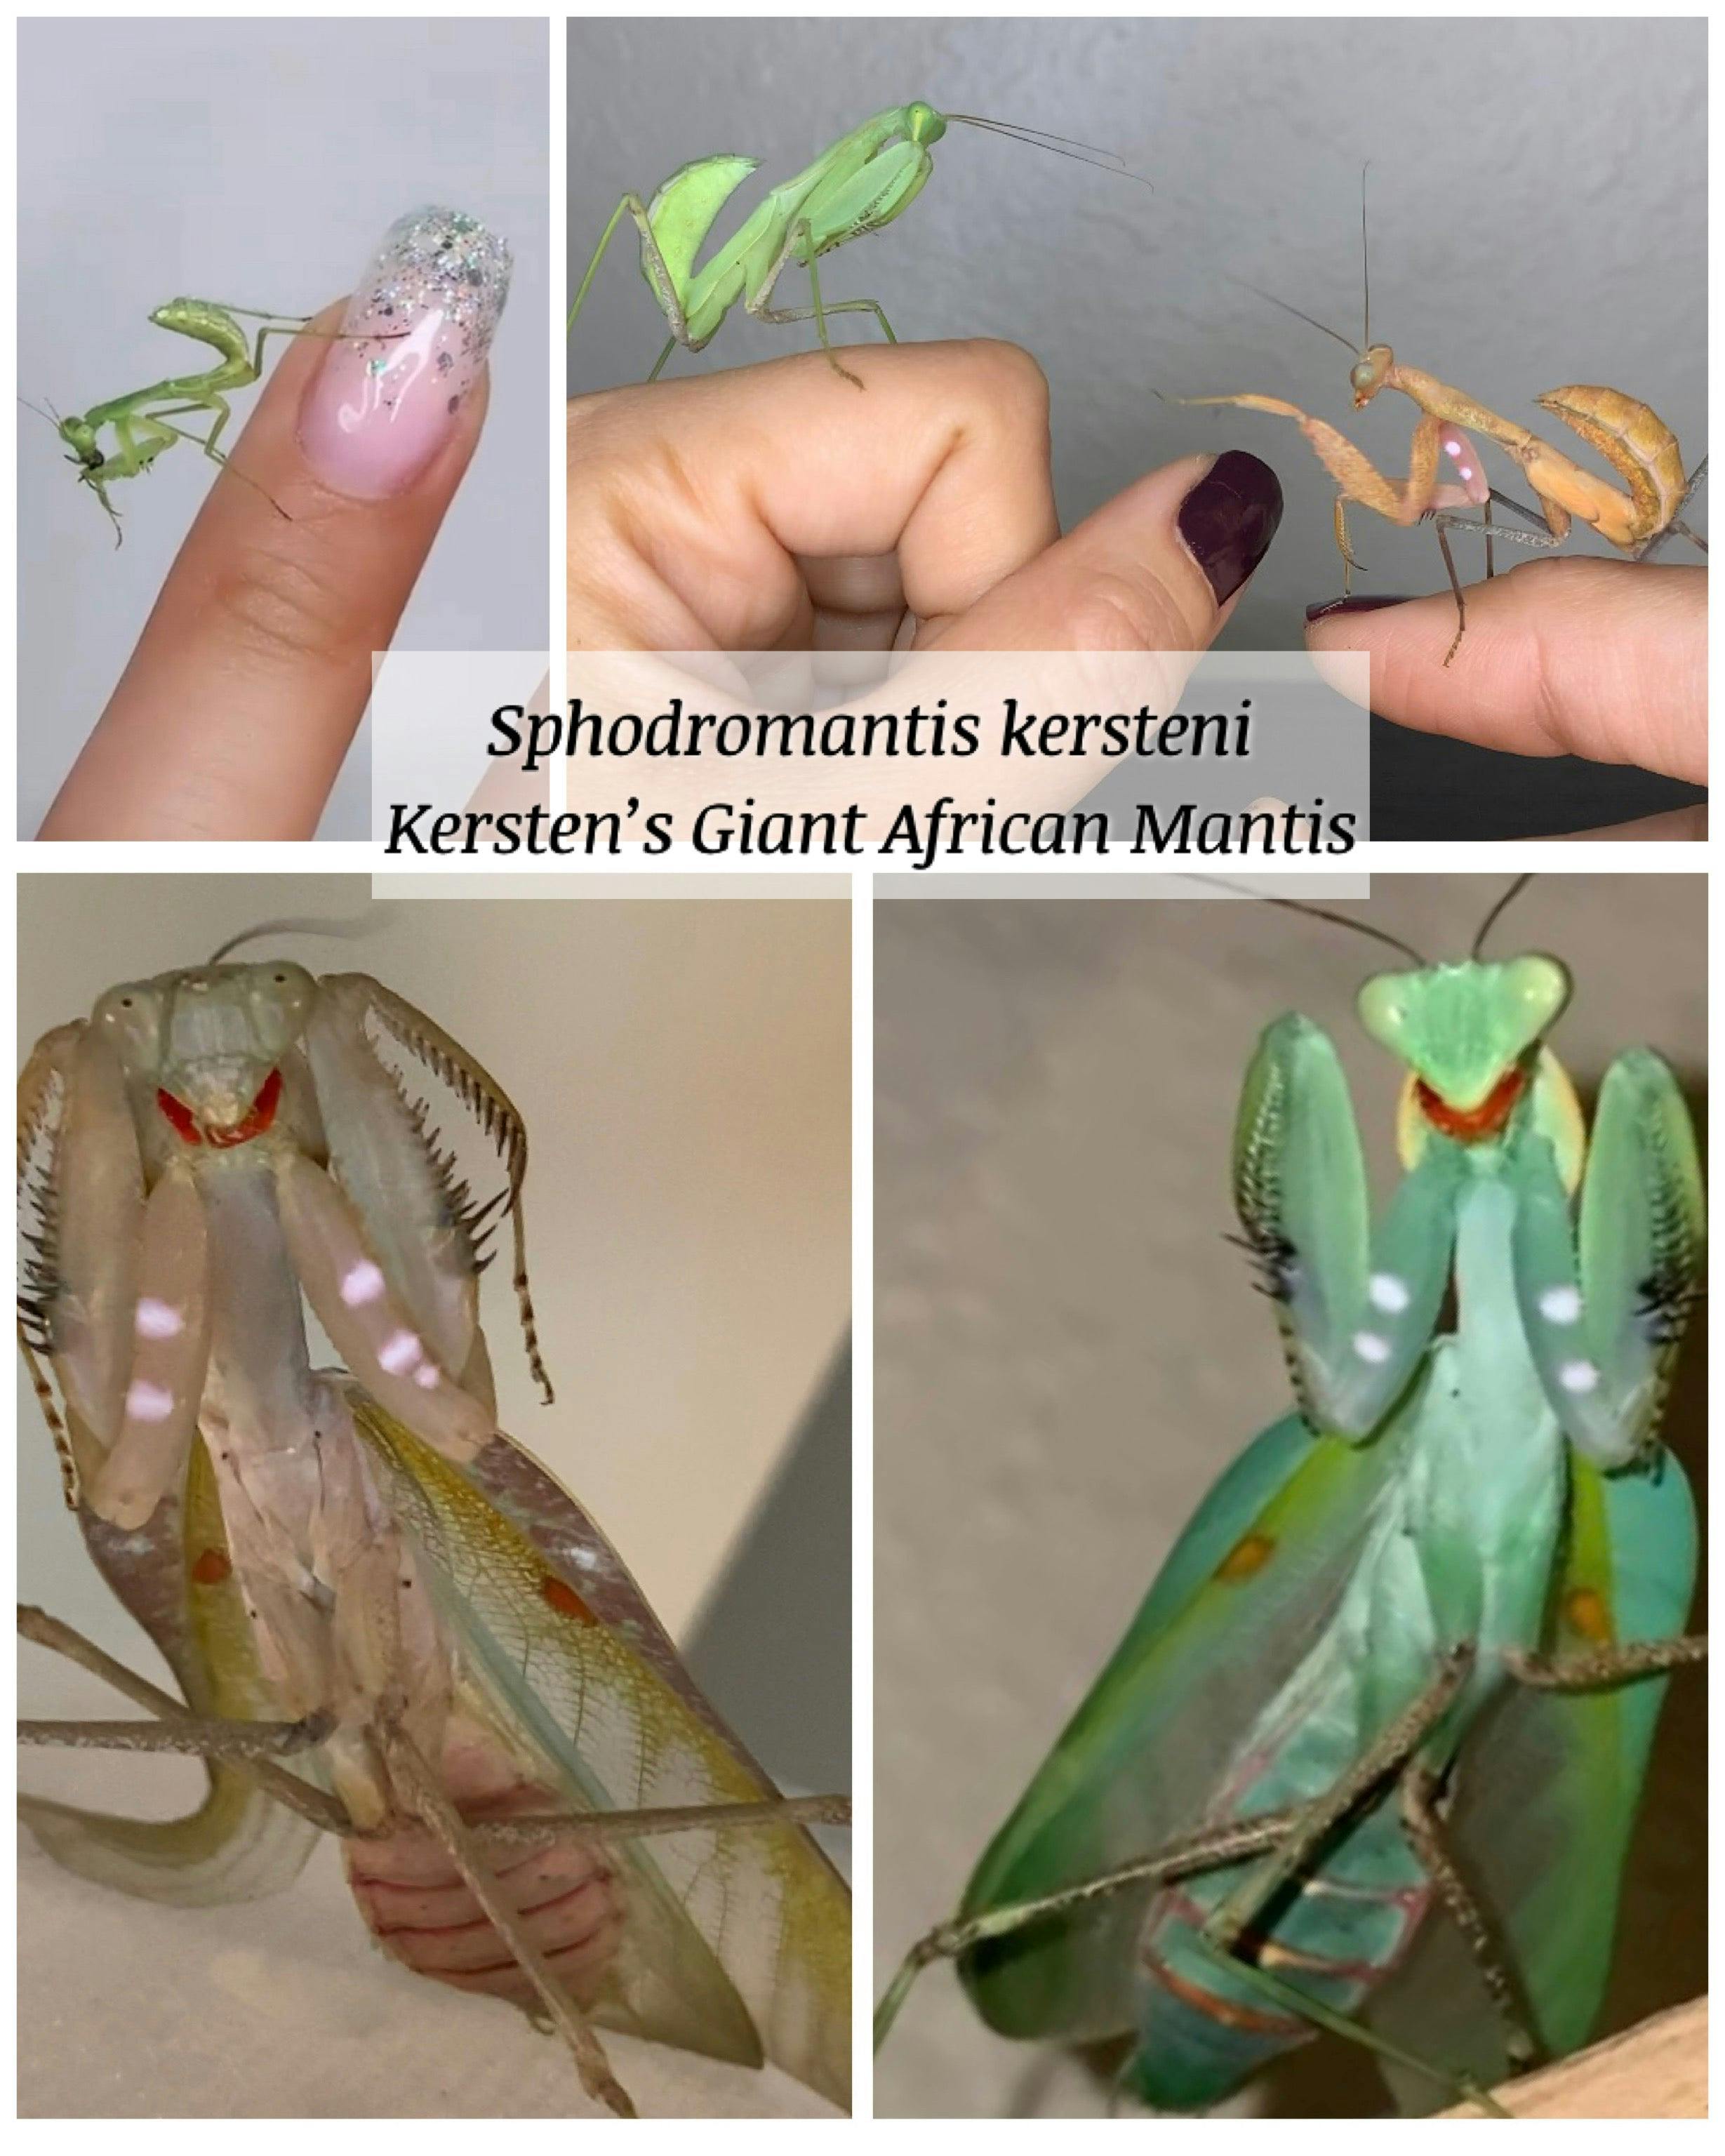 Kersten’s Giant African Mantis - Sphodromantis kersteni